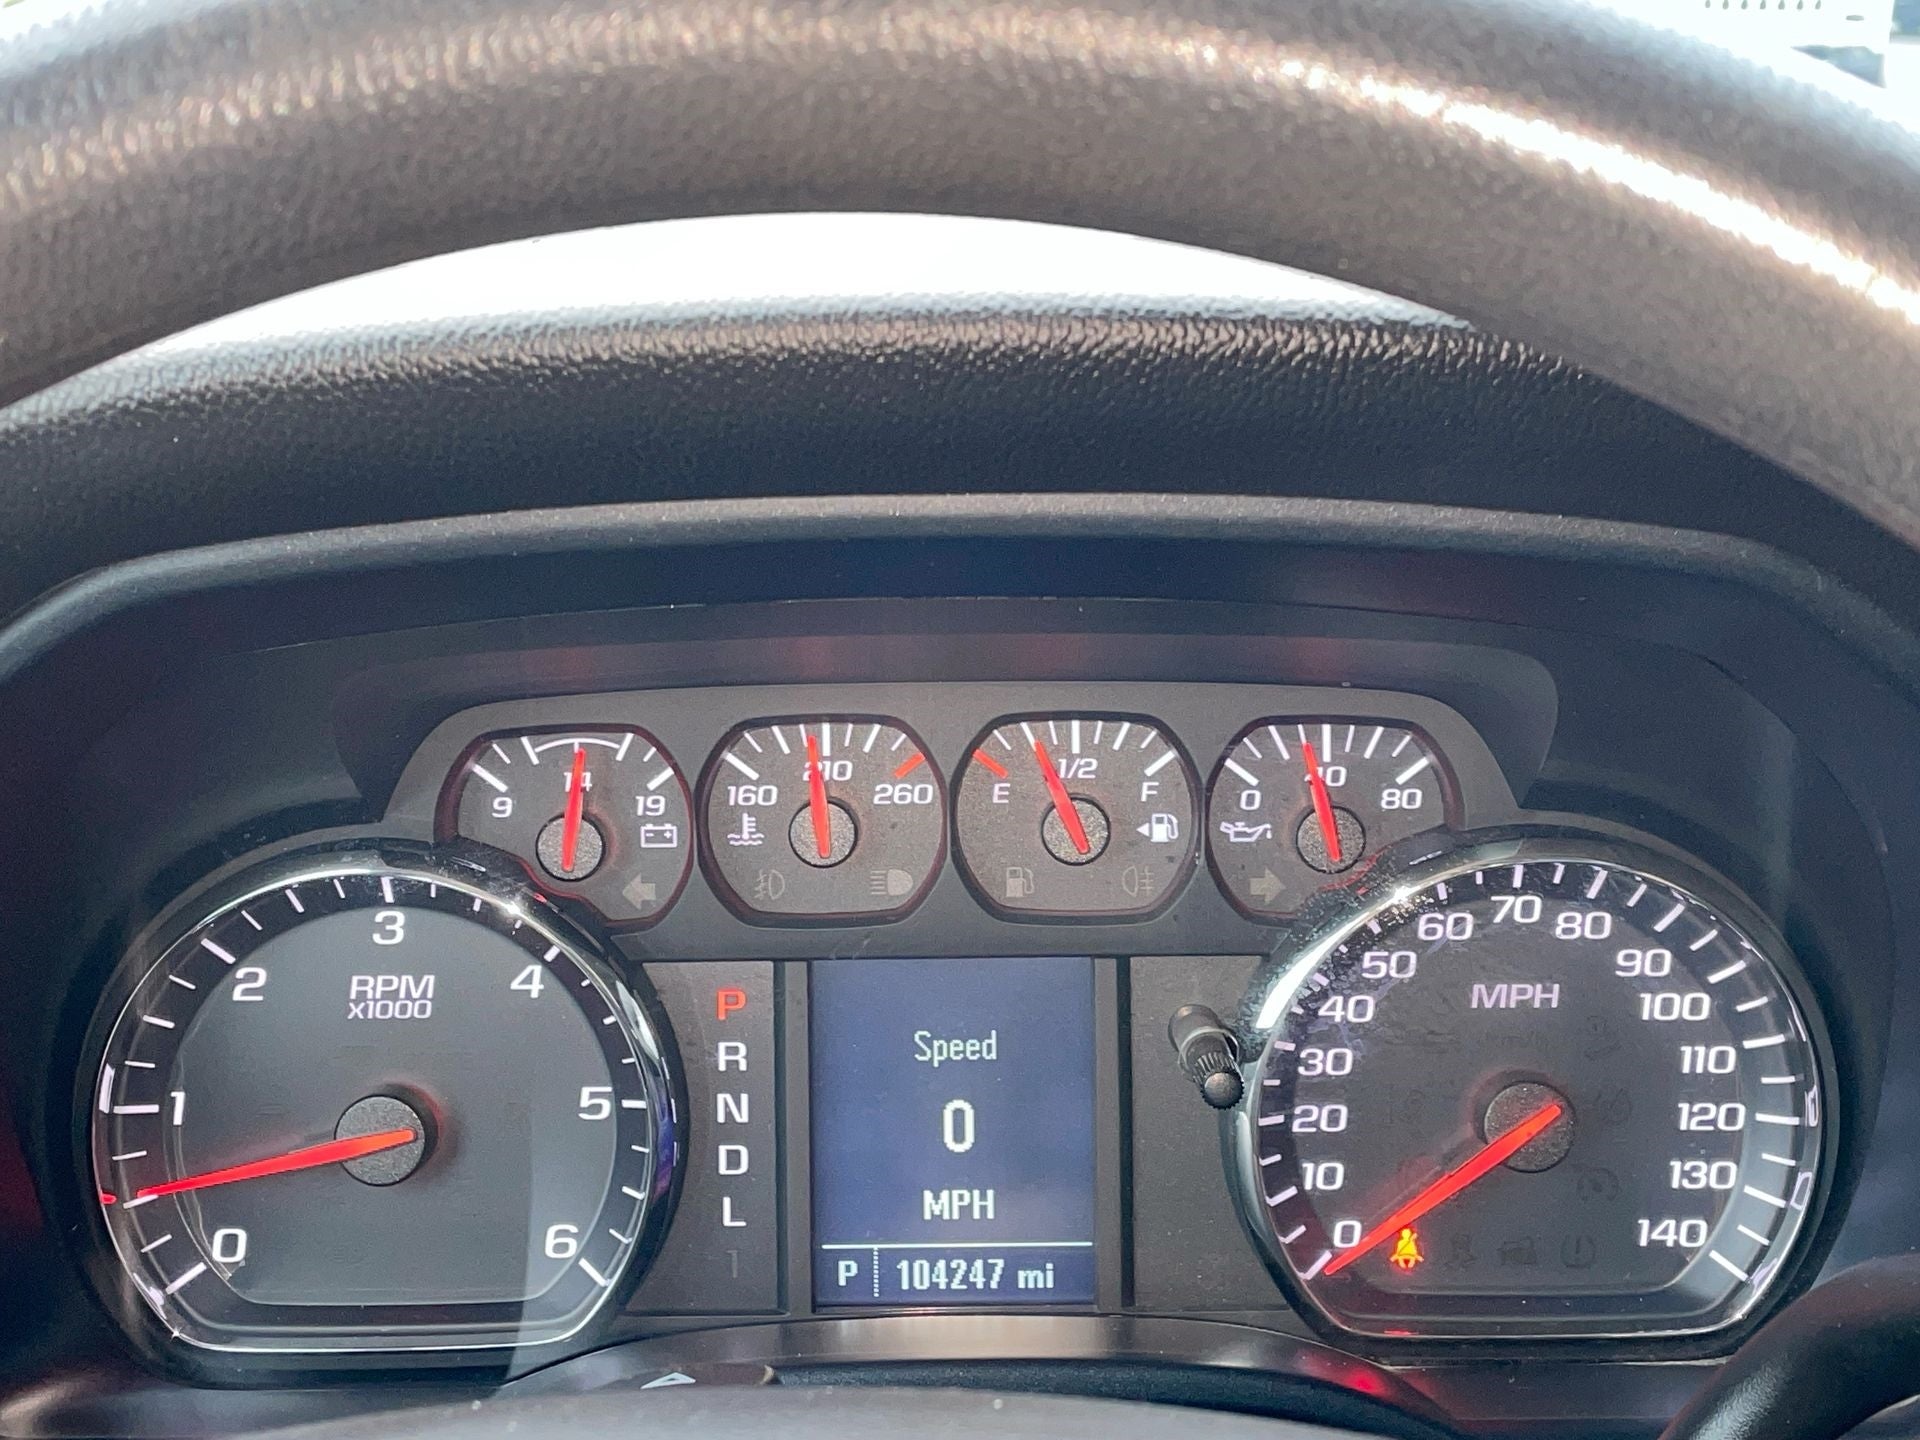 2018 GMC Sierra 1500 REG CAB 2WD 119.0